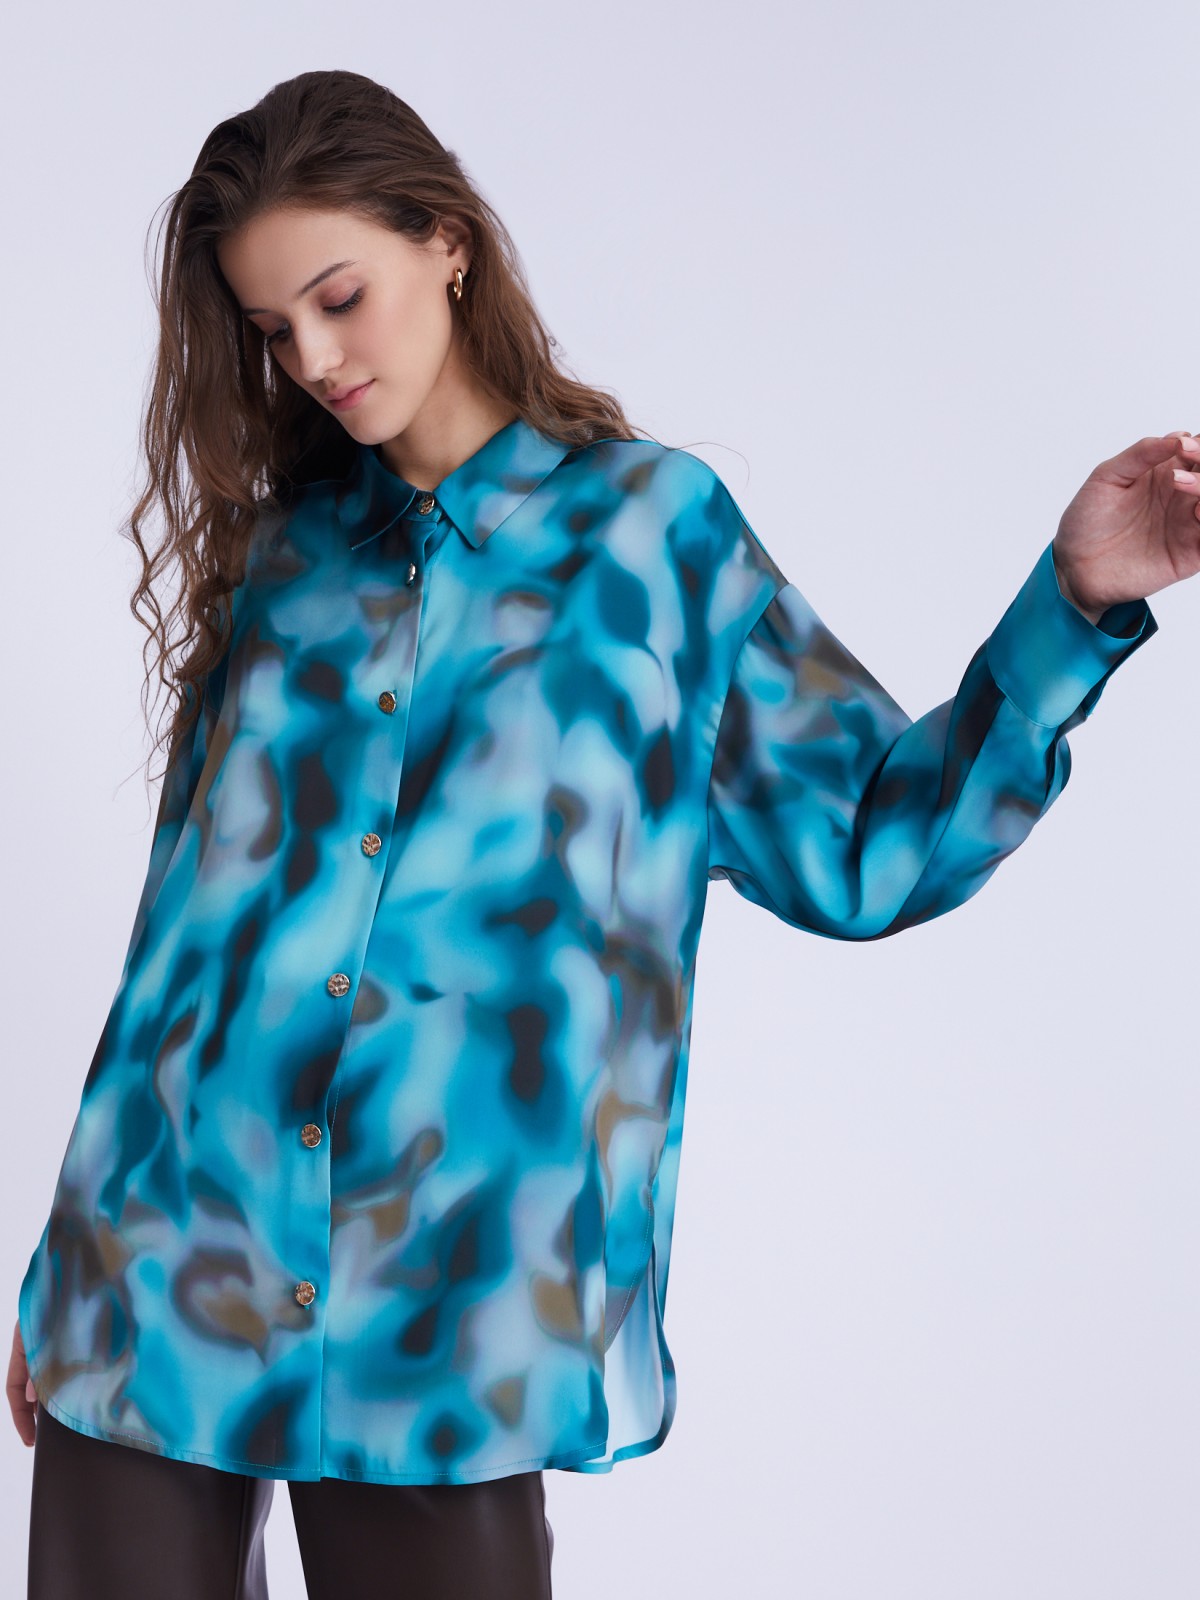 Атласная блузка-рубашка оверсайз силуэта с акцентным принтом zolla 22333117Y041, цвет бирюзовый, размер L - фото 3